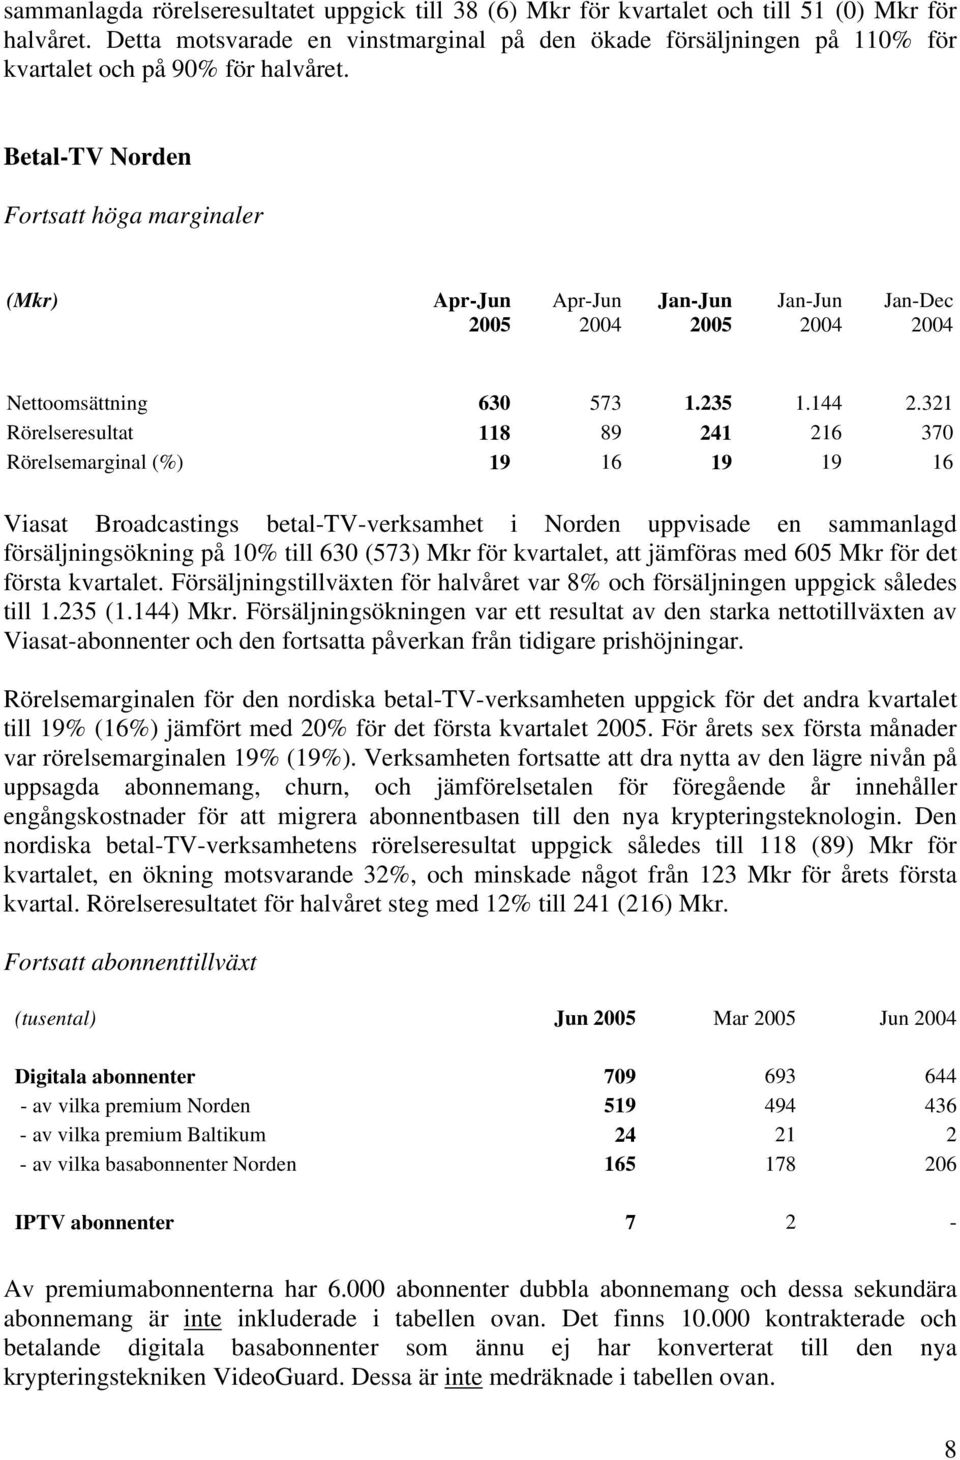 321 Rörelseresultat 118 89 241 216 370 Rörelsemarginal (%) 19 16 19 19 16 Viasat Broadcastings betal-tv-verksamhet i Norden uppvisade en sammanlagd försäljningsökning på 10% till 630 (573) Mkr för